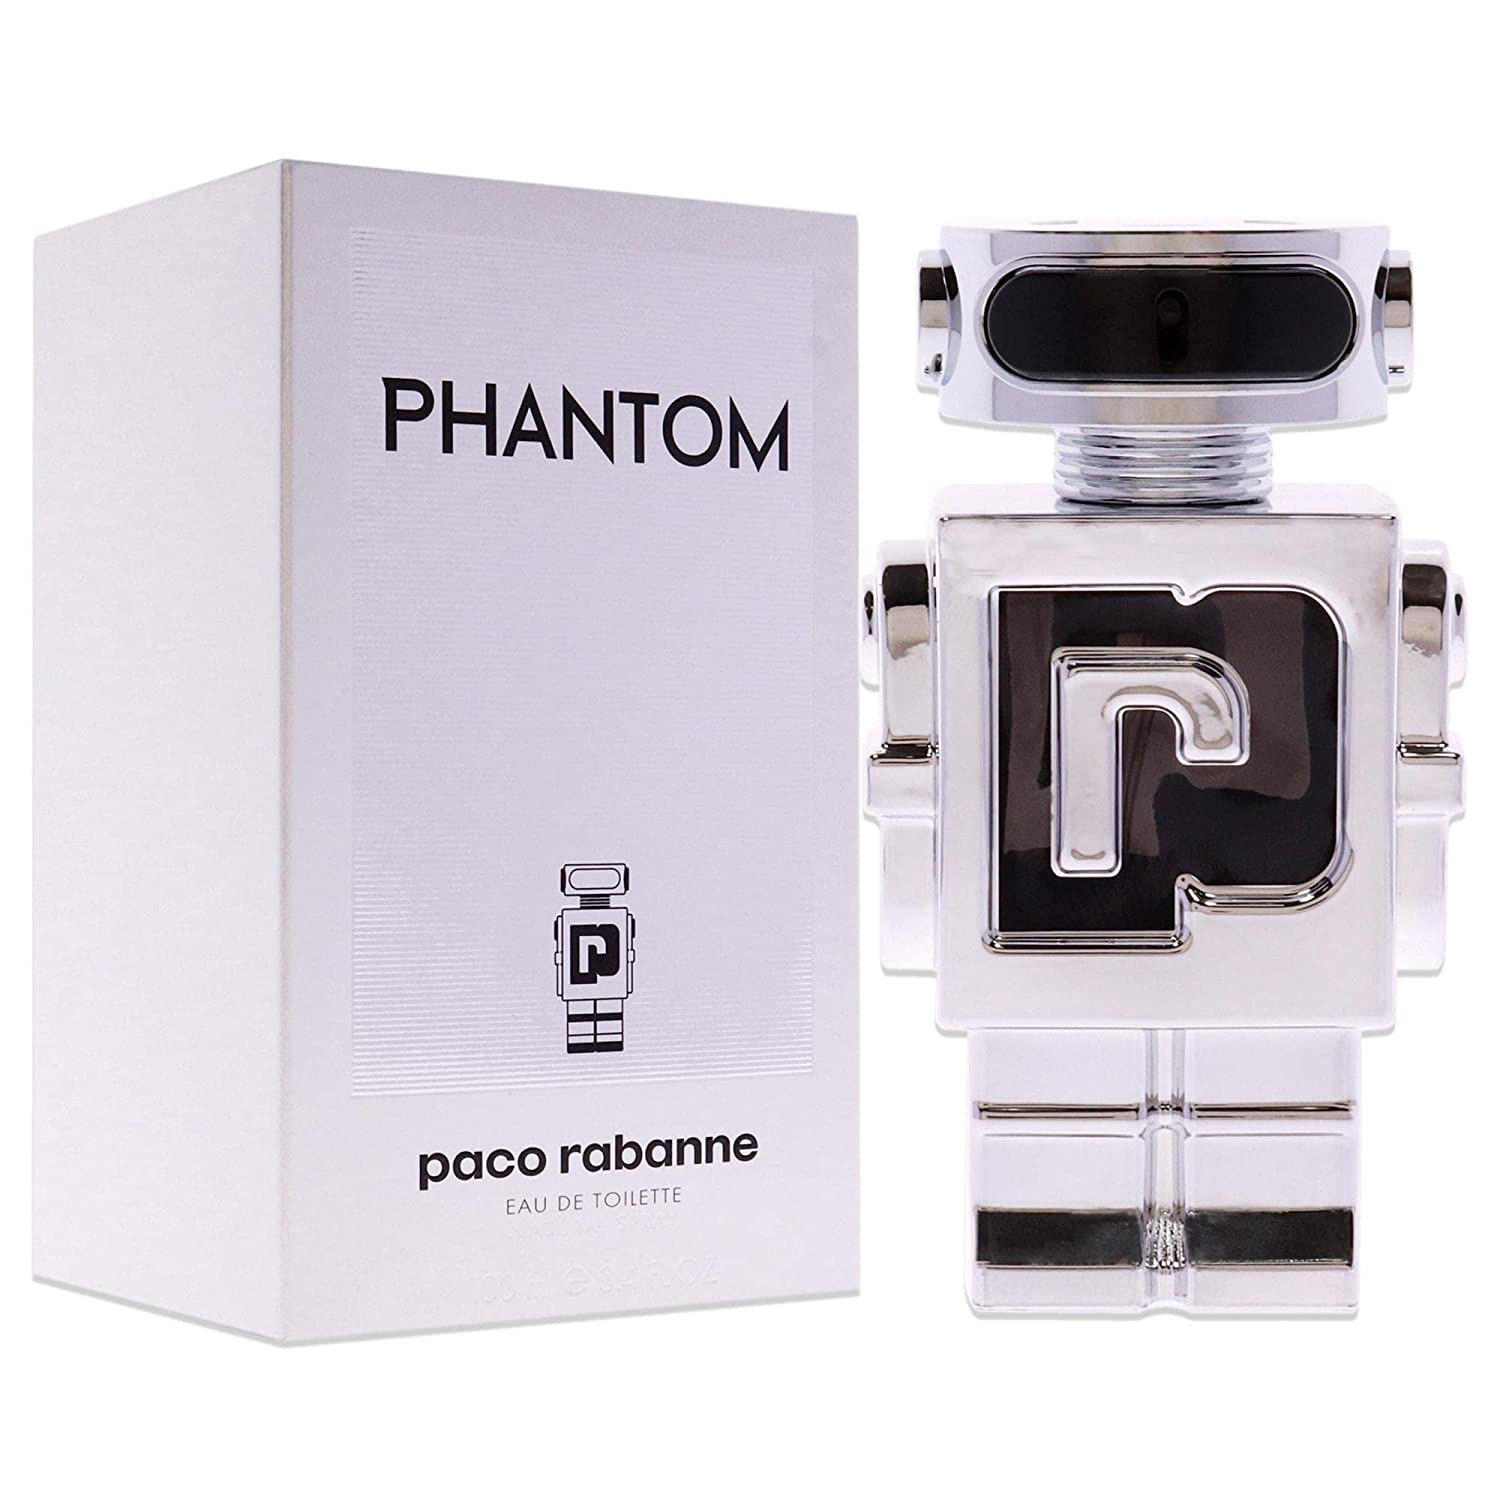 Paco Rabanne Phantom EDT Spray for Men